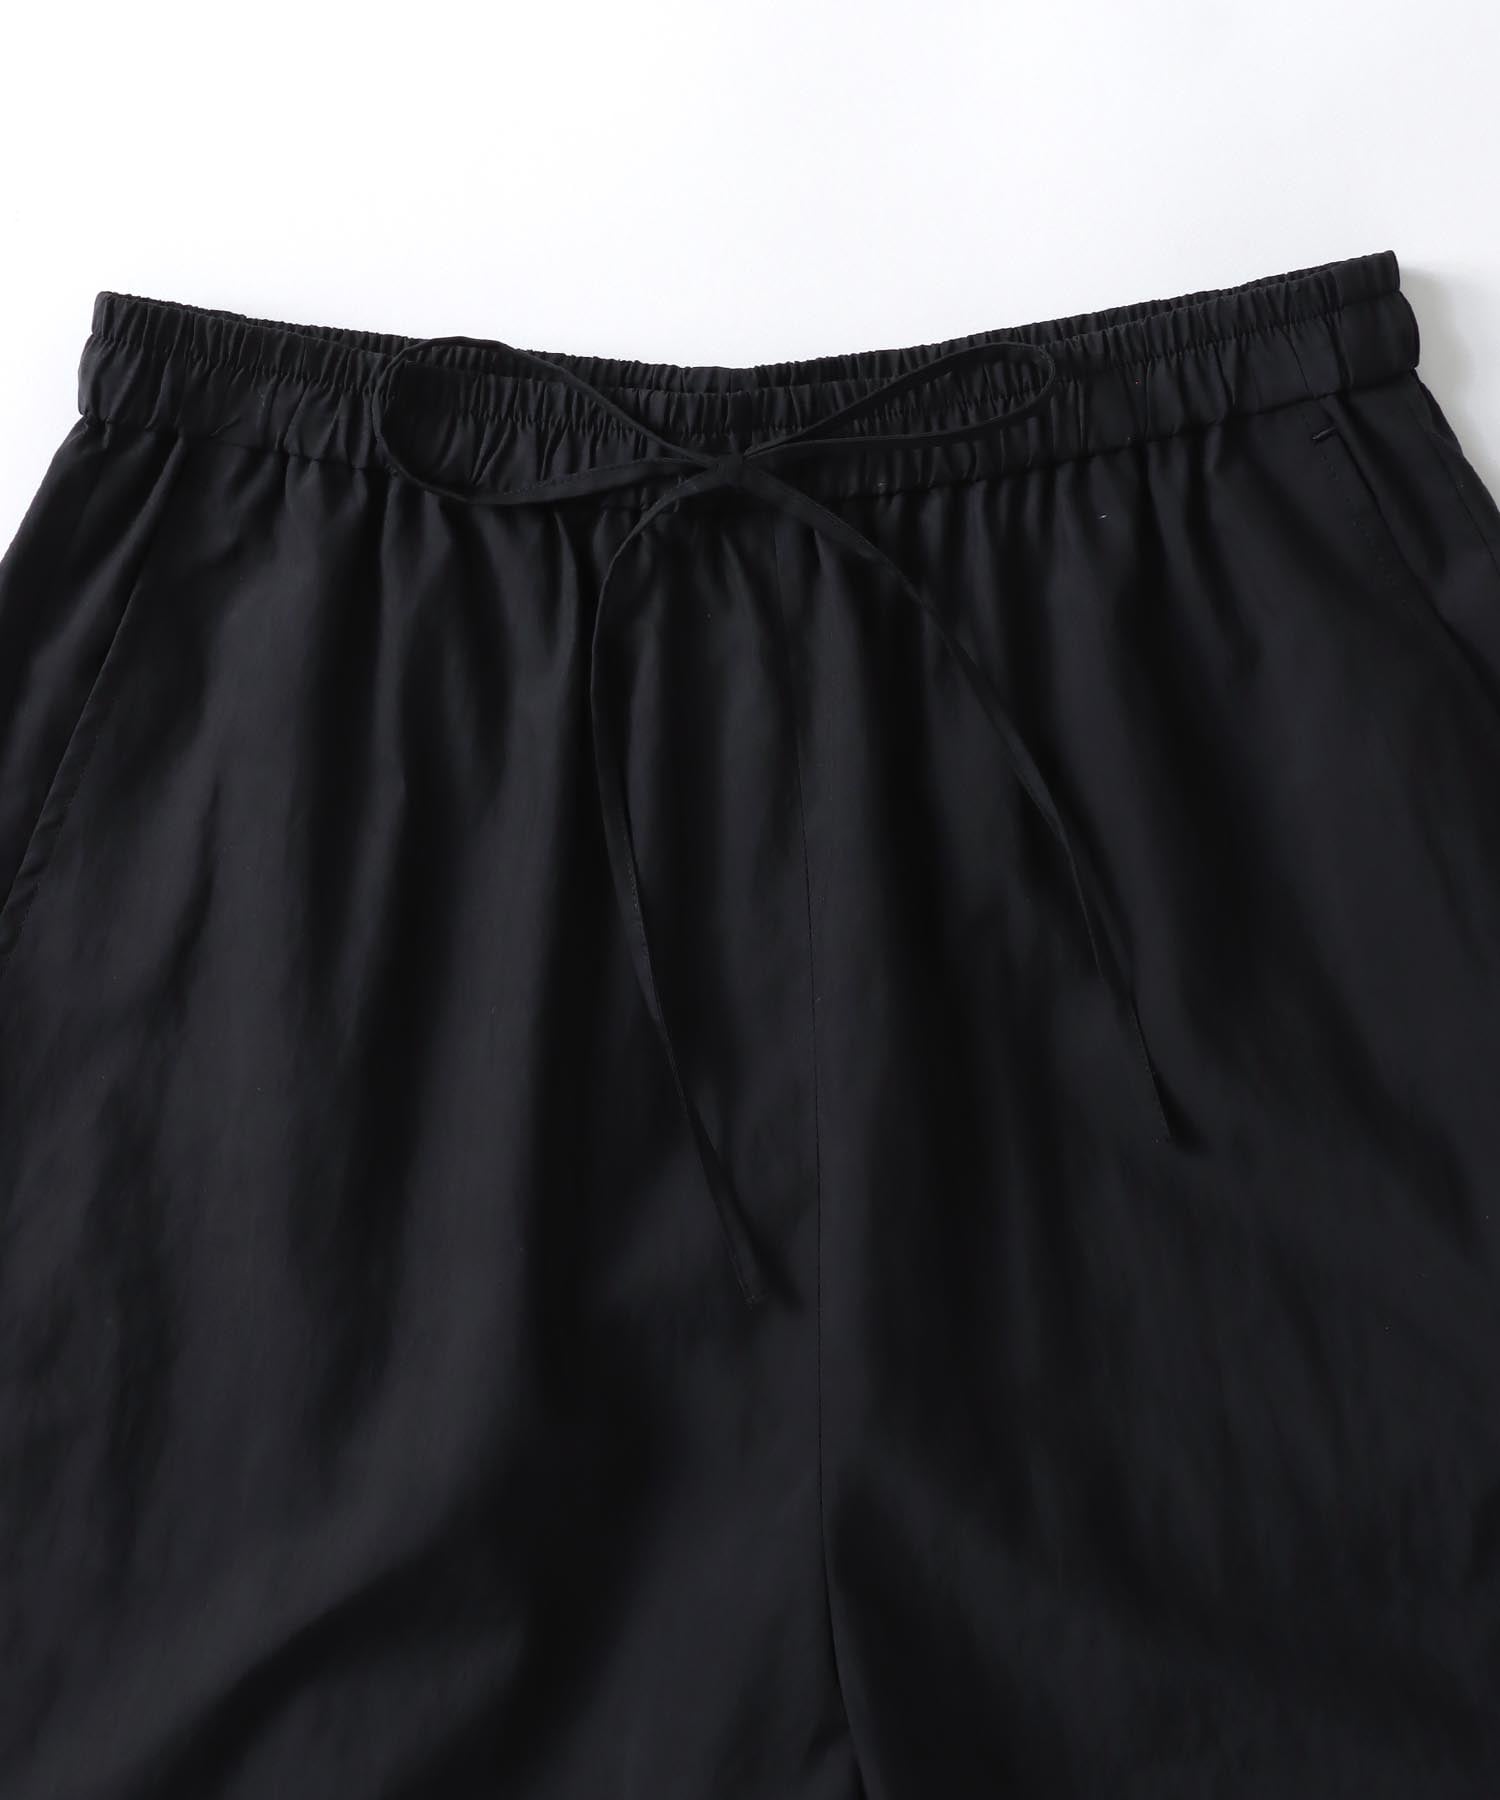 Tn/Ny wrinkle bermuda shorts